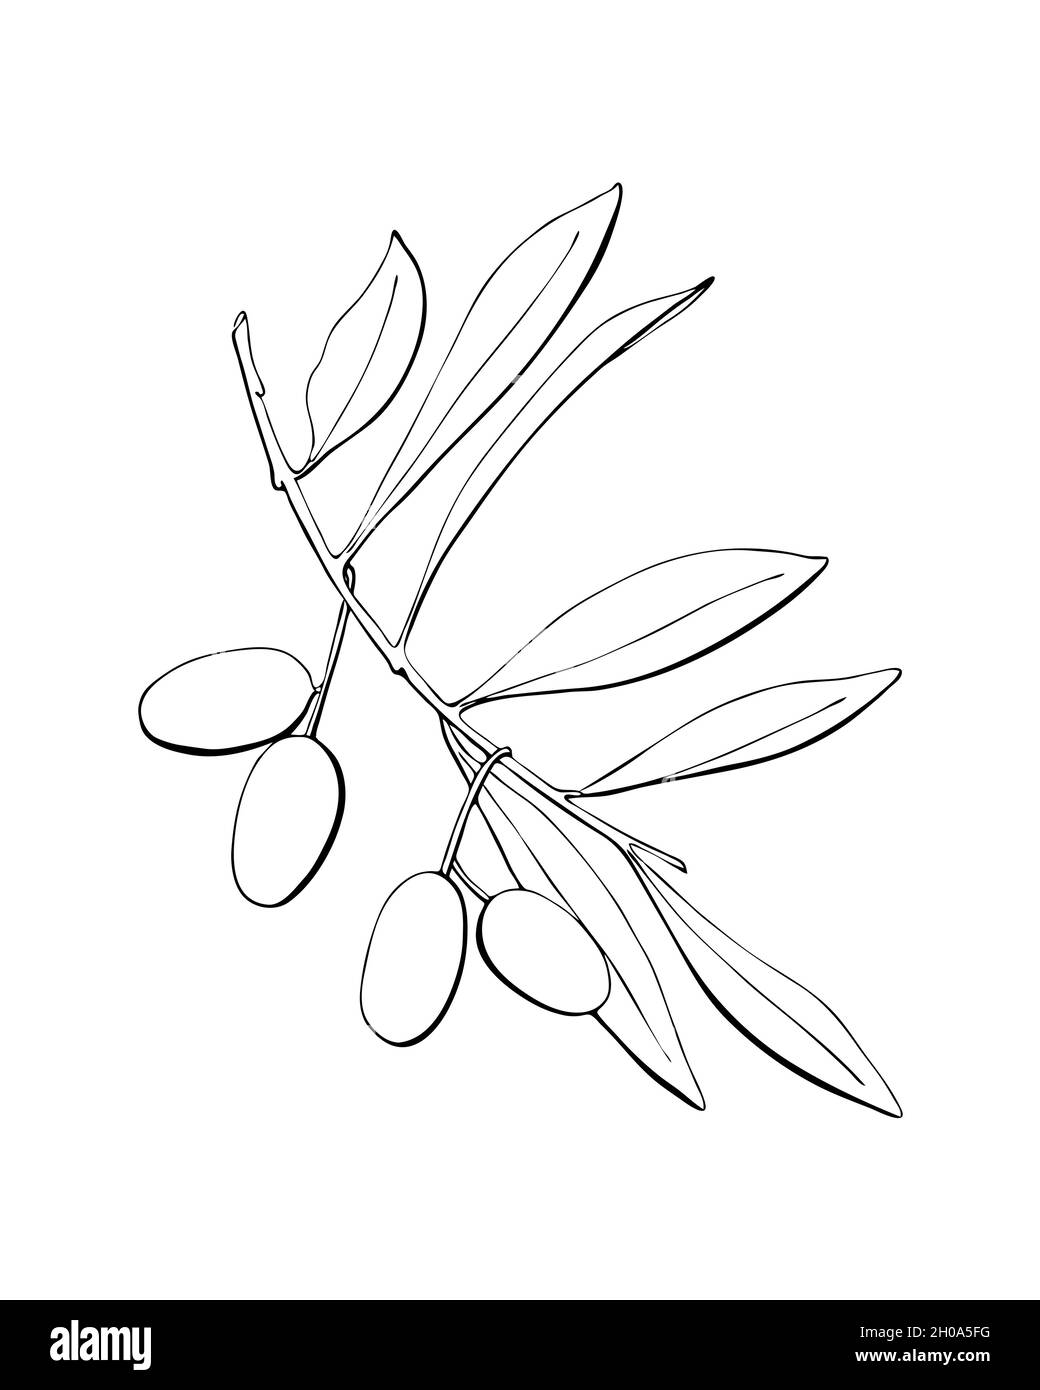 Ramo di olive con frutta e foglie, disegno a mano contorno, silhouette, isolato, sfondo bianco. Illustrazione vettoriale Illustrazione Vettoriale